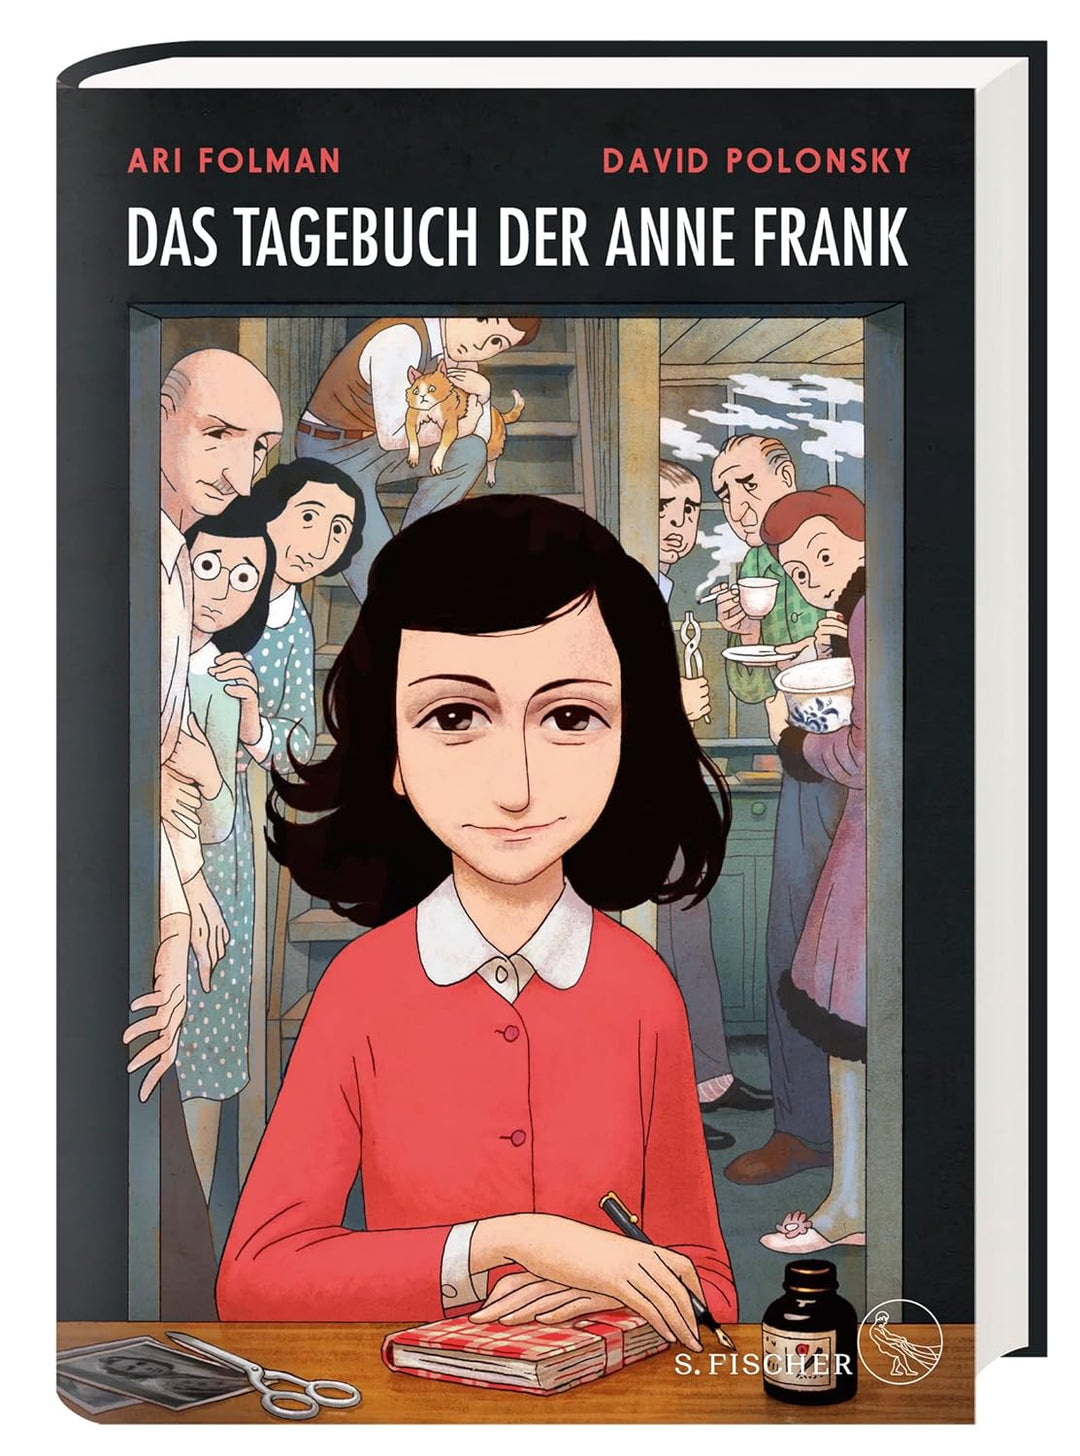 "Das Tagebuch der Anne Frank" als Graphic Diary